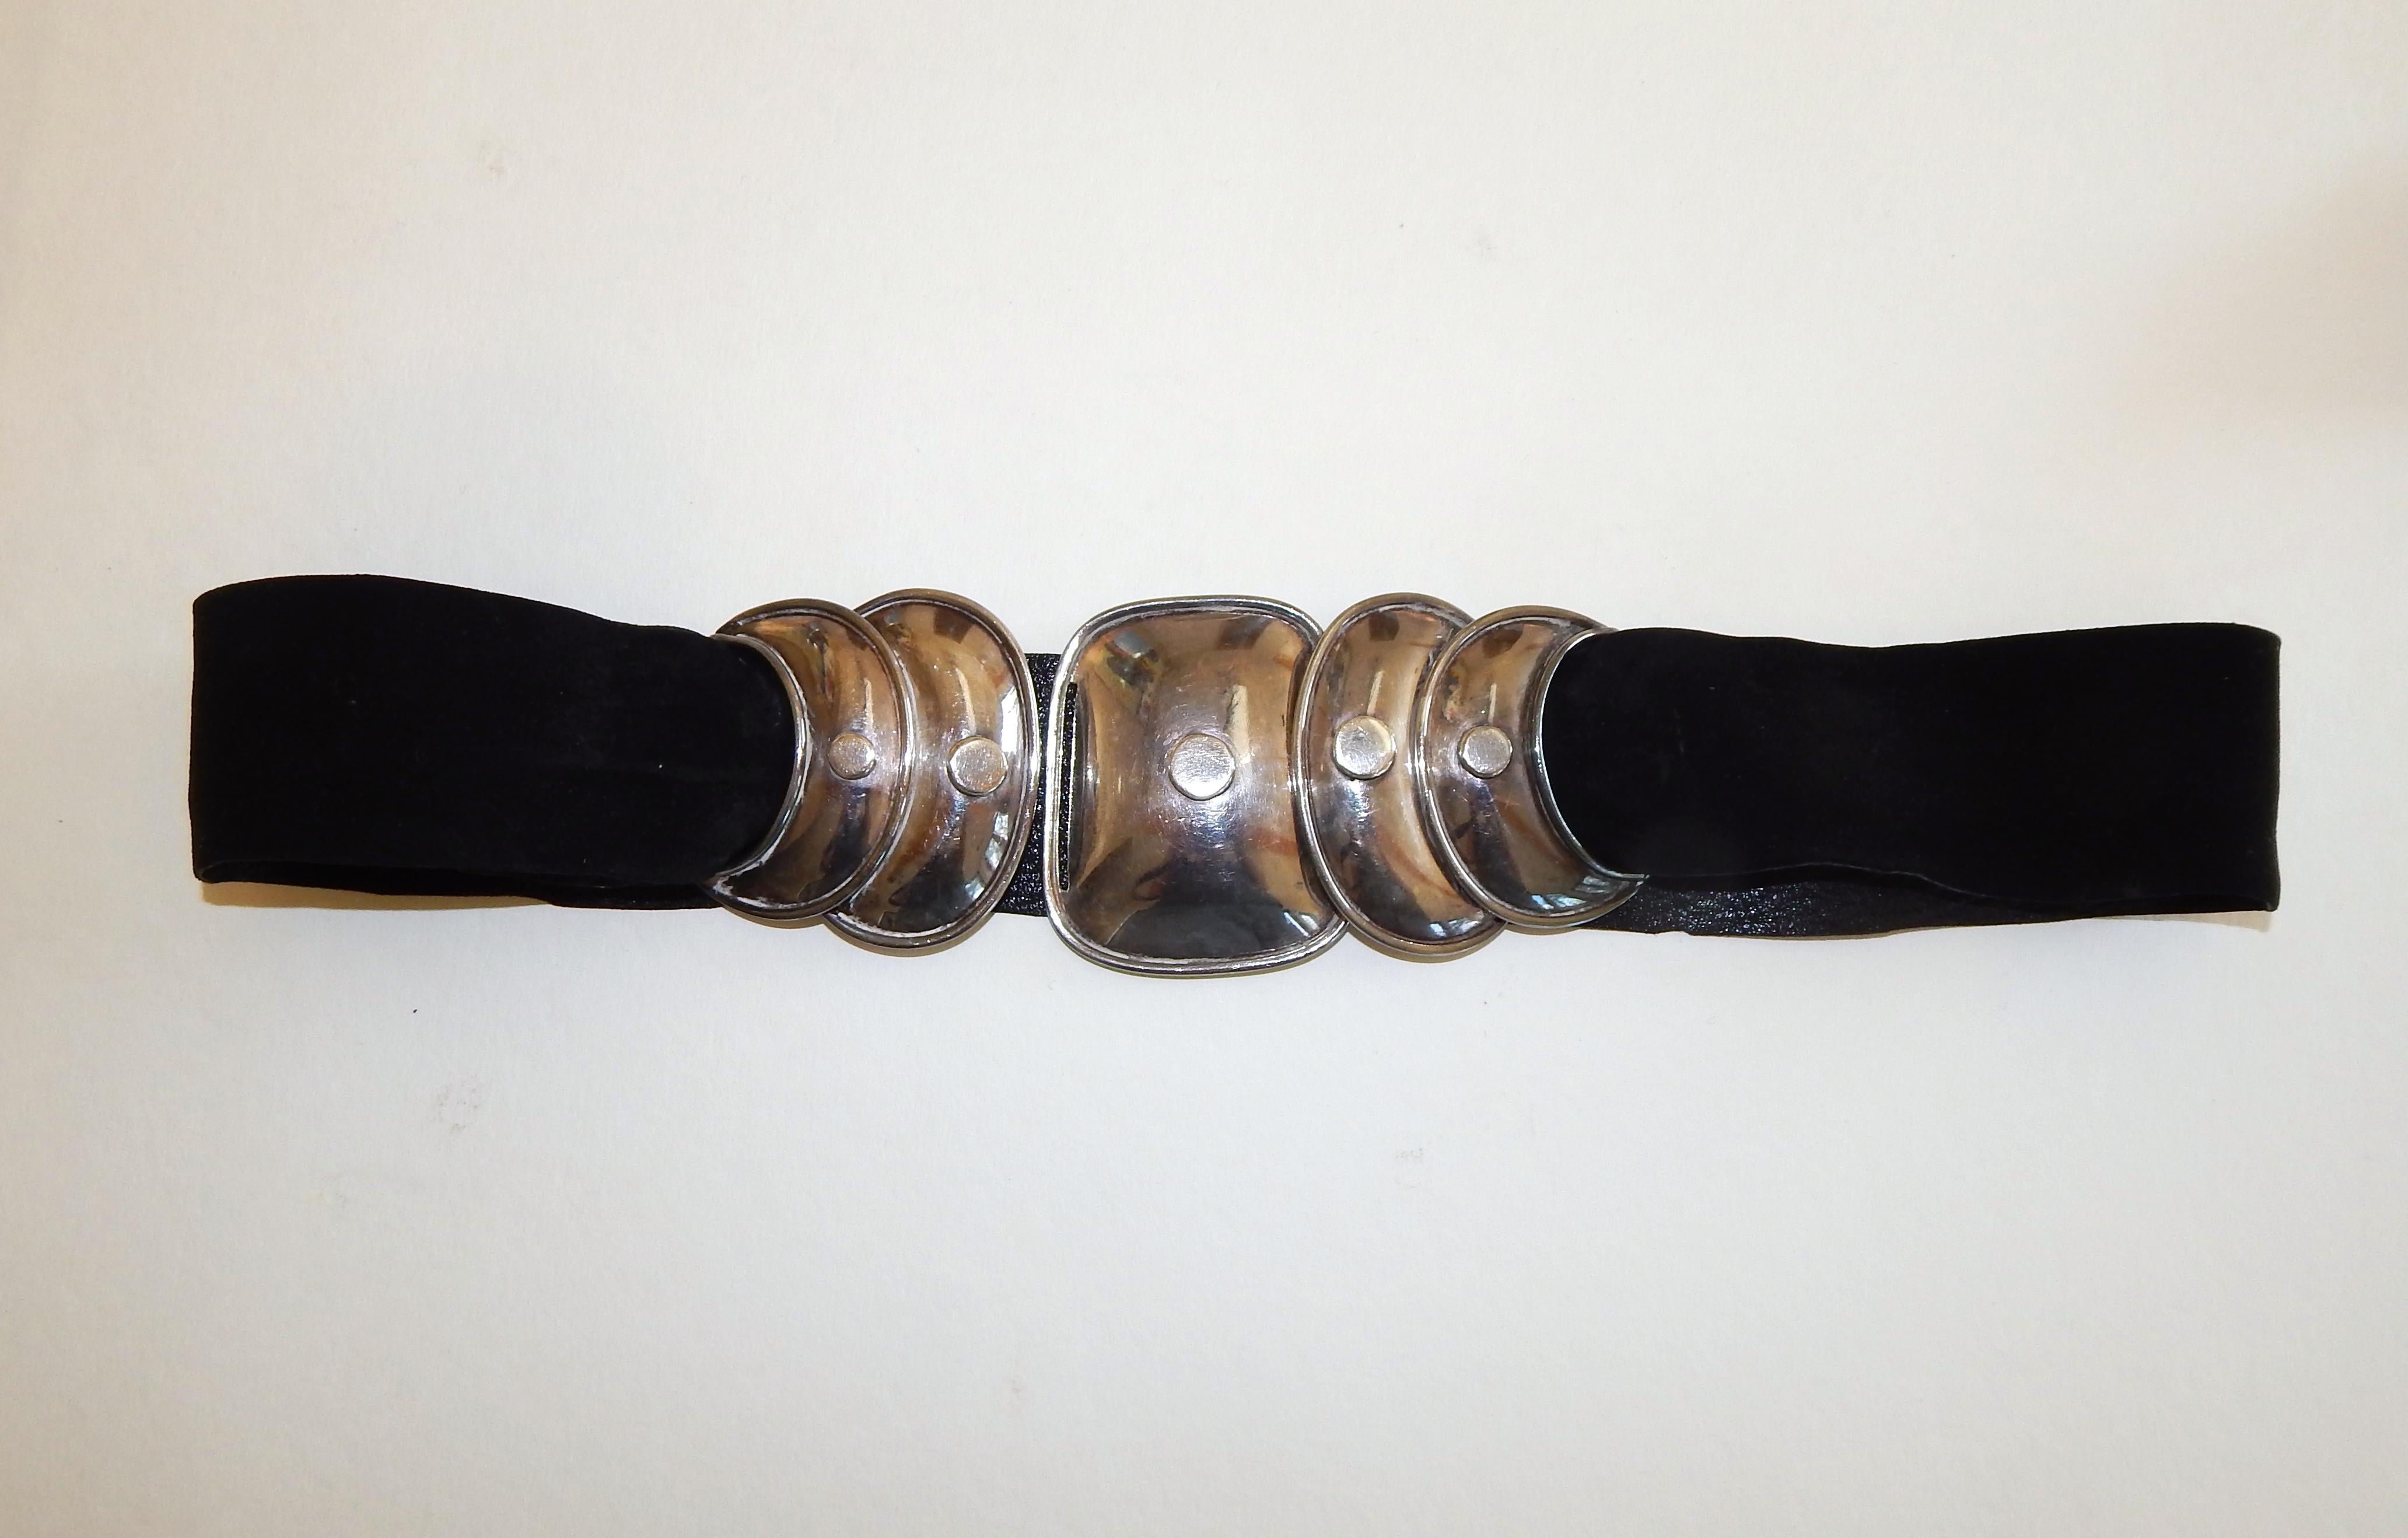 Fabuleuse parure de bijoux en sterling Armadillo design 940 Taxco par Hector Aguilar.
Gracieux et solide. La ceinture et le collier sont enfilés sur le velours d'origine.
L'ensemble comprend : Ceinture, collier, bracelet et boucles